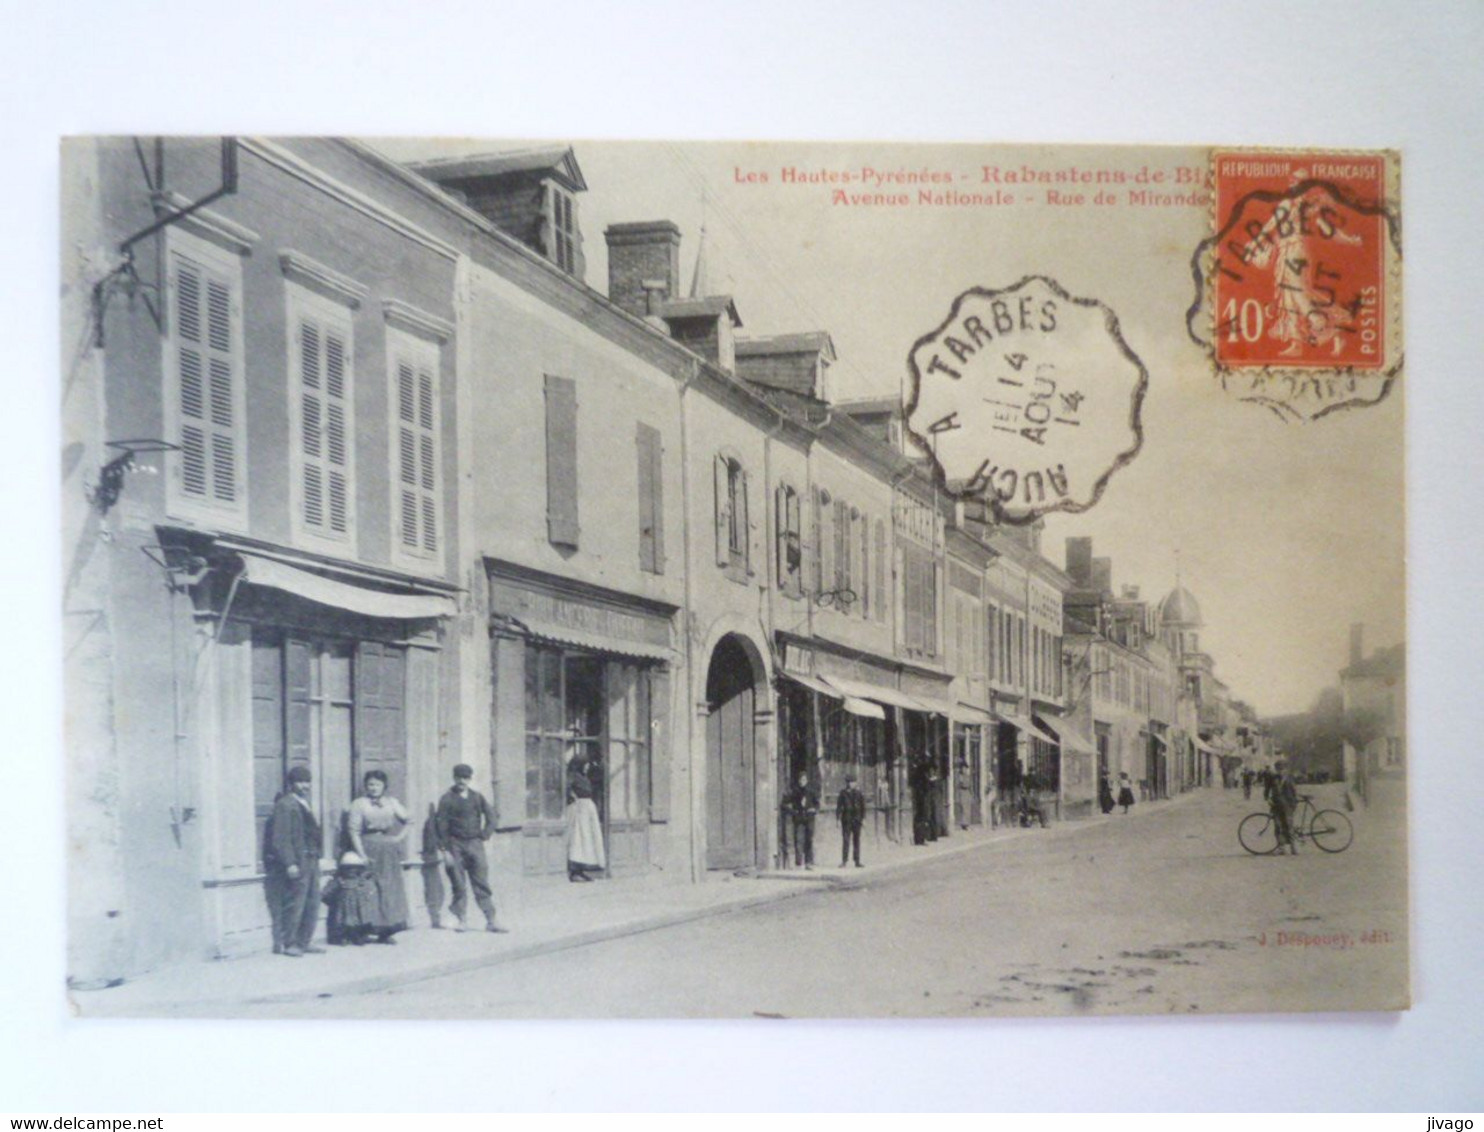 2022 - 769  RABASTENS-de-BIGORRE  (Hautes-Pyrénées)  :  Avenue Nationale  -  Rue De MIRANDE  1914    XXX - Rabastens De Bigorre